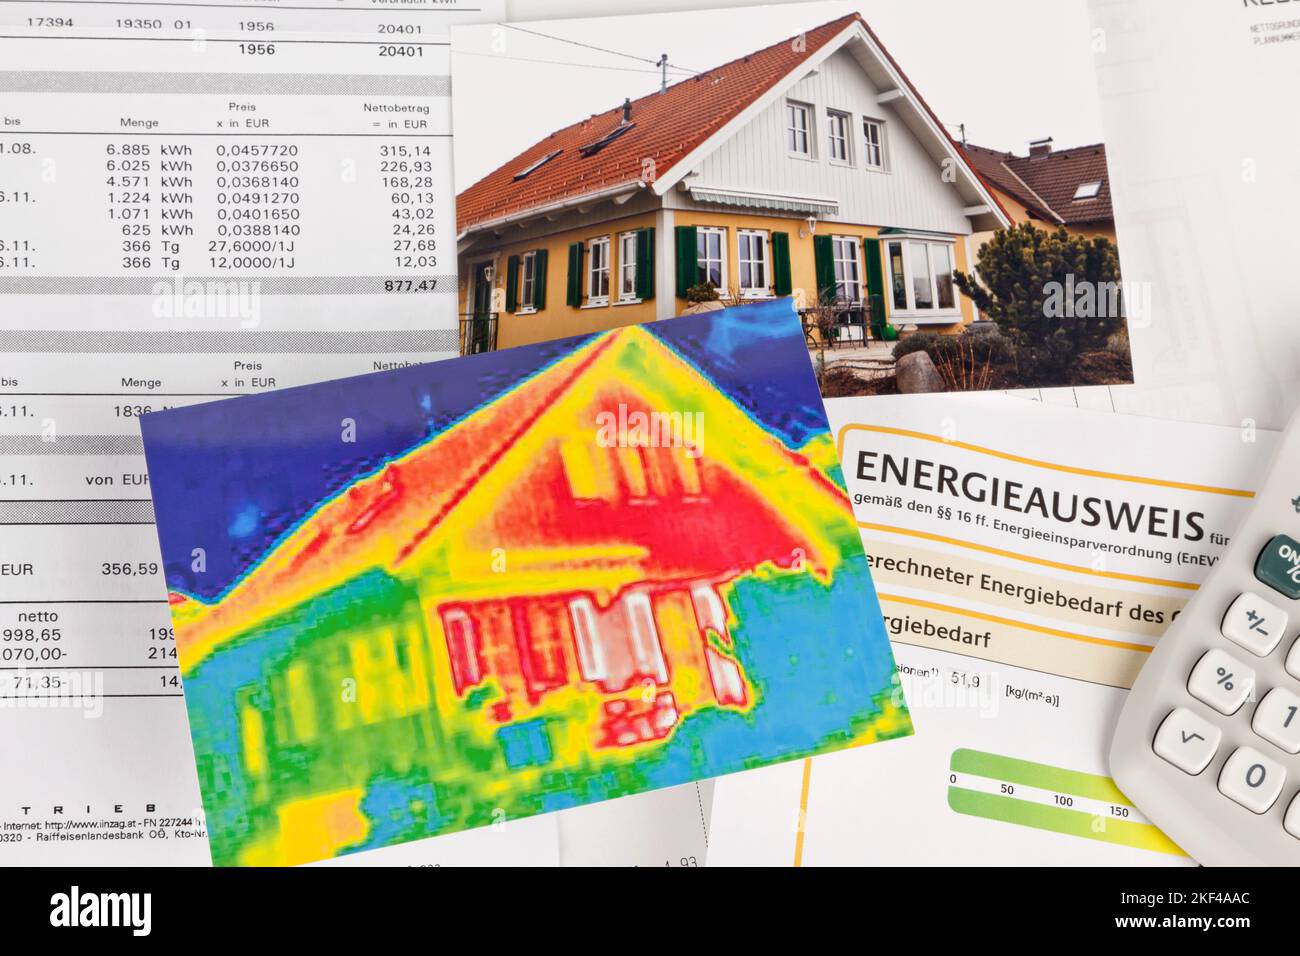 Energie sparen durch Wärmedämmung, Haus mit Infrarotkamera fotografiert. Stockfoto